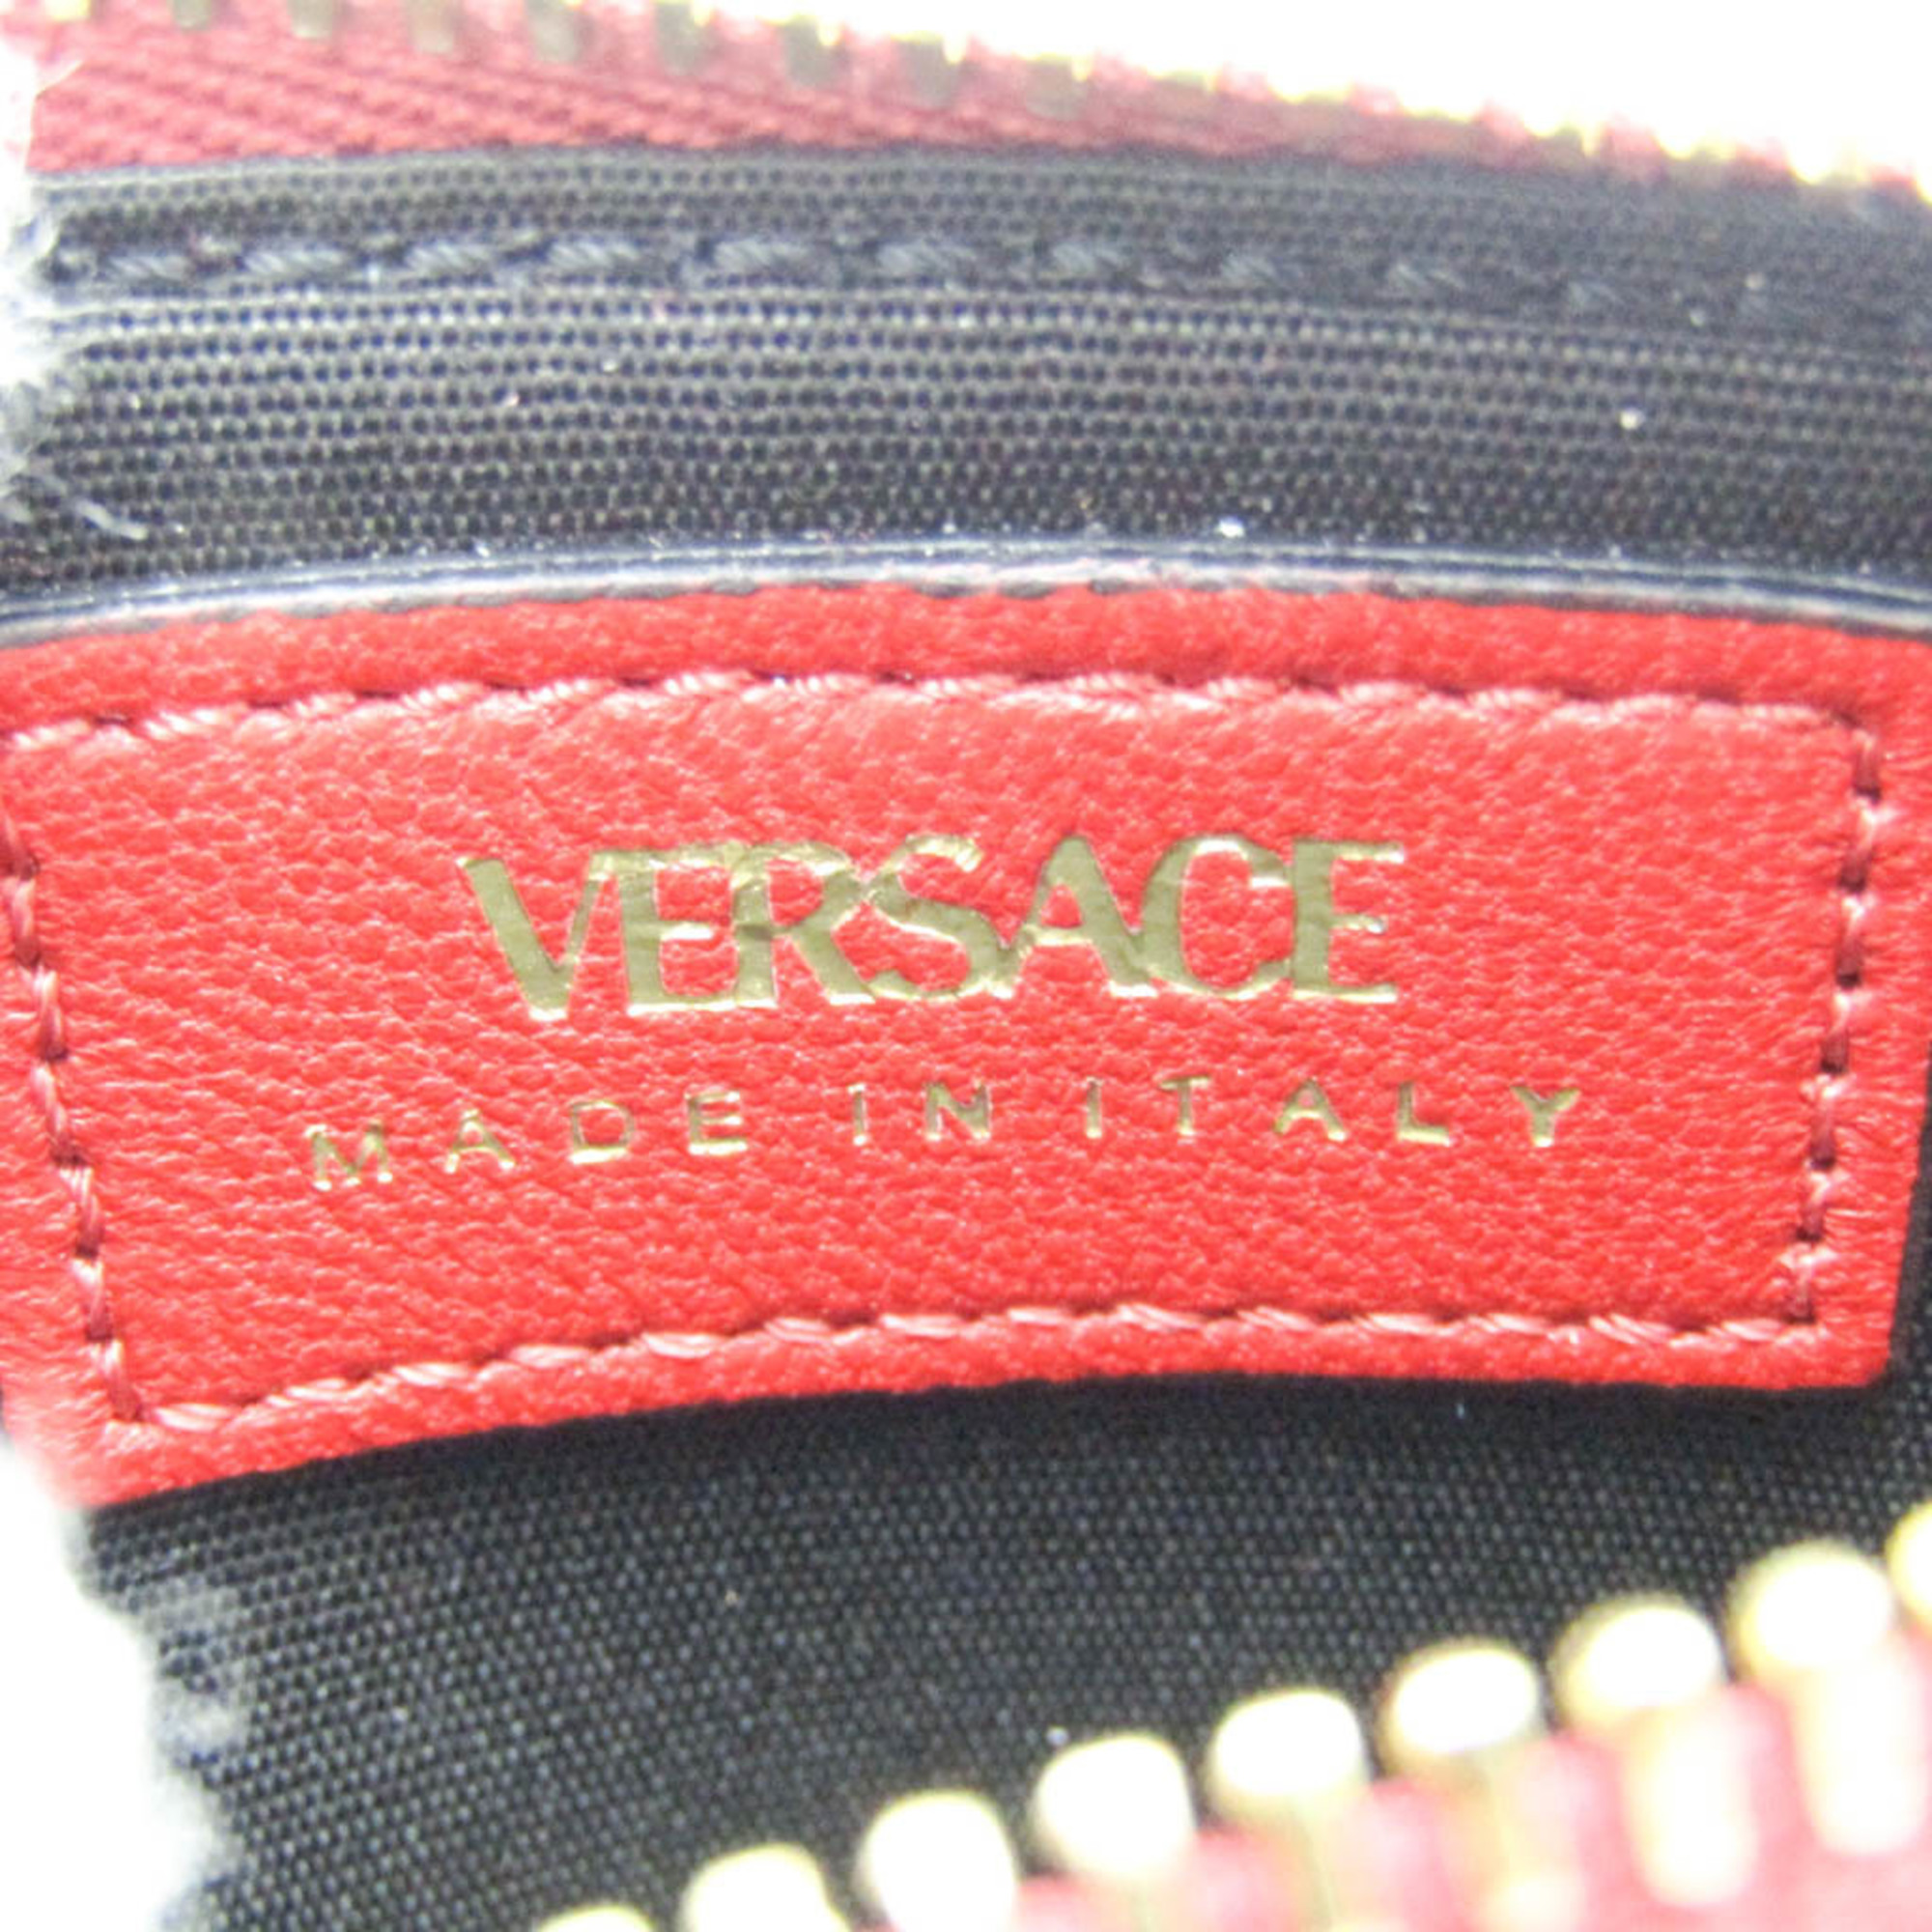 ヴェルサーチェ(Versace) メデューサ ブランド キルティング 小銭入れ DP3I168S レザー カードケース レッド